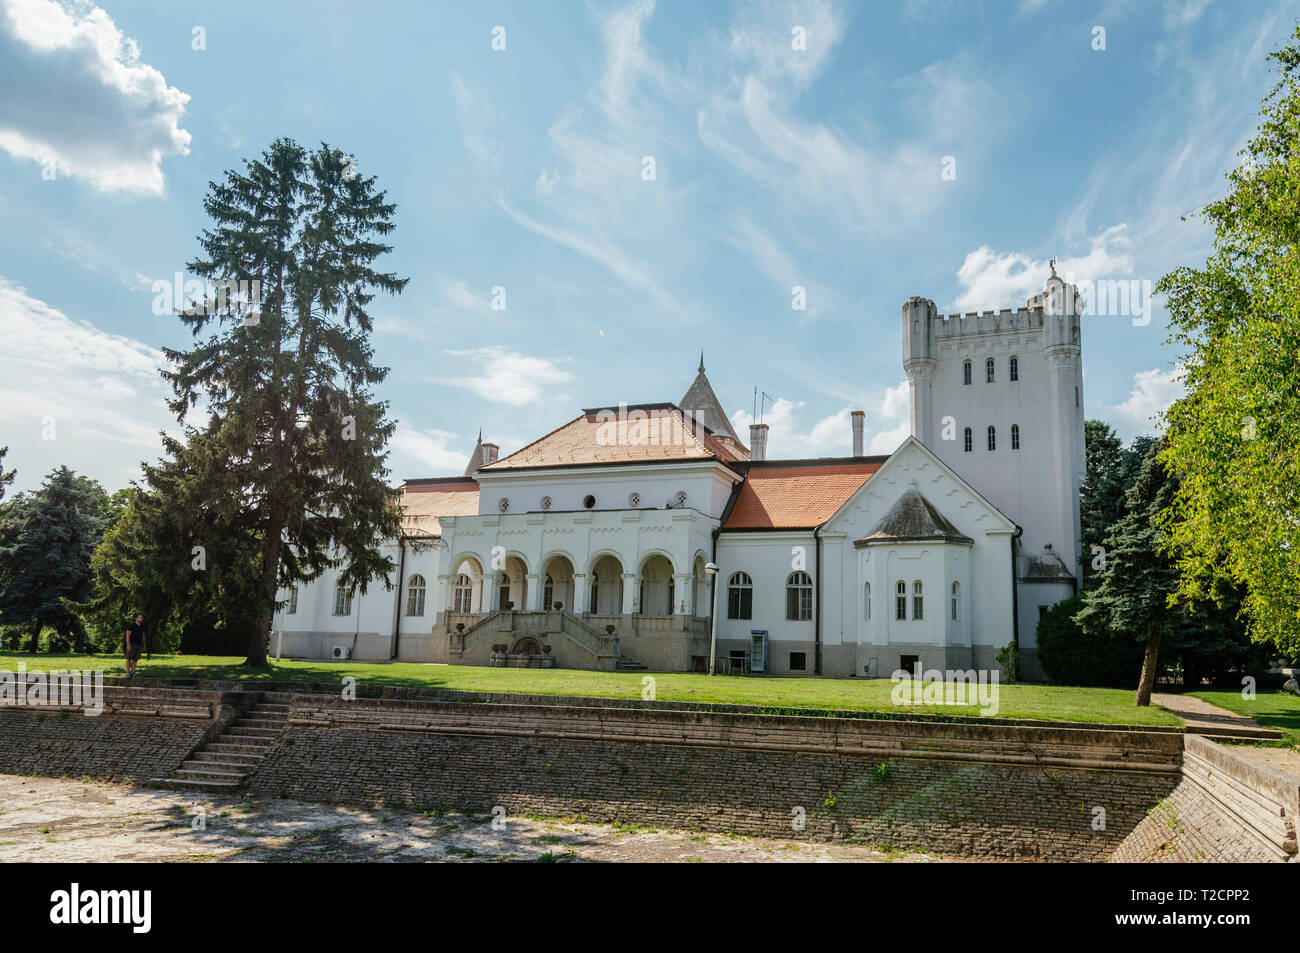 Fantast o Dundjerski Castello, famosa destinazione turistica, vicino a Becej town, Serbia Foto Stock